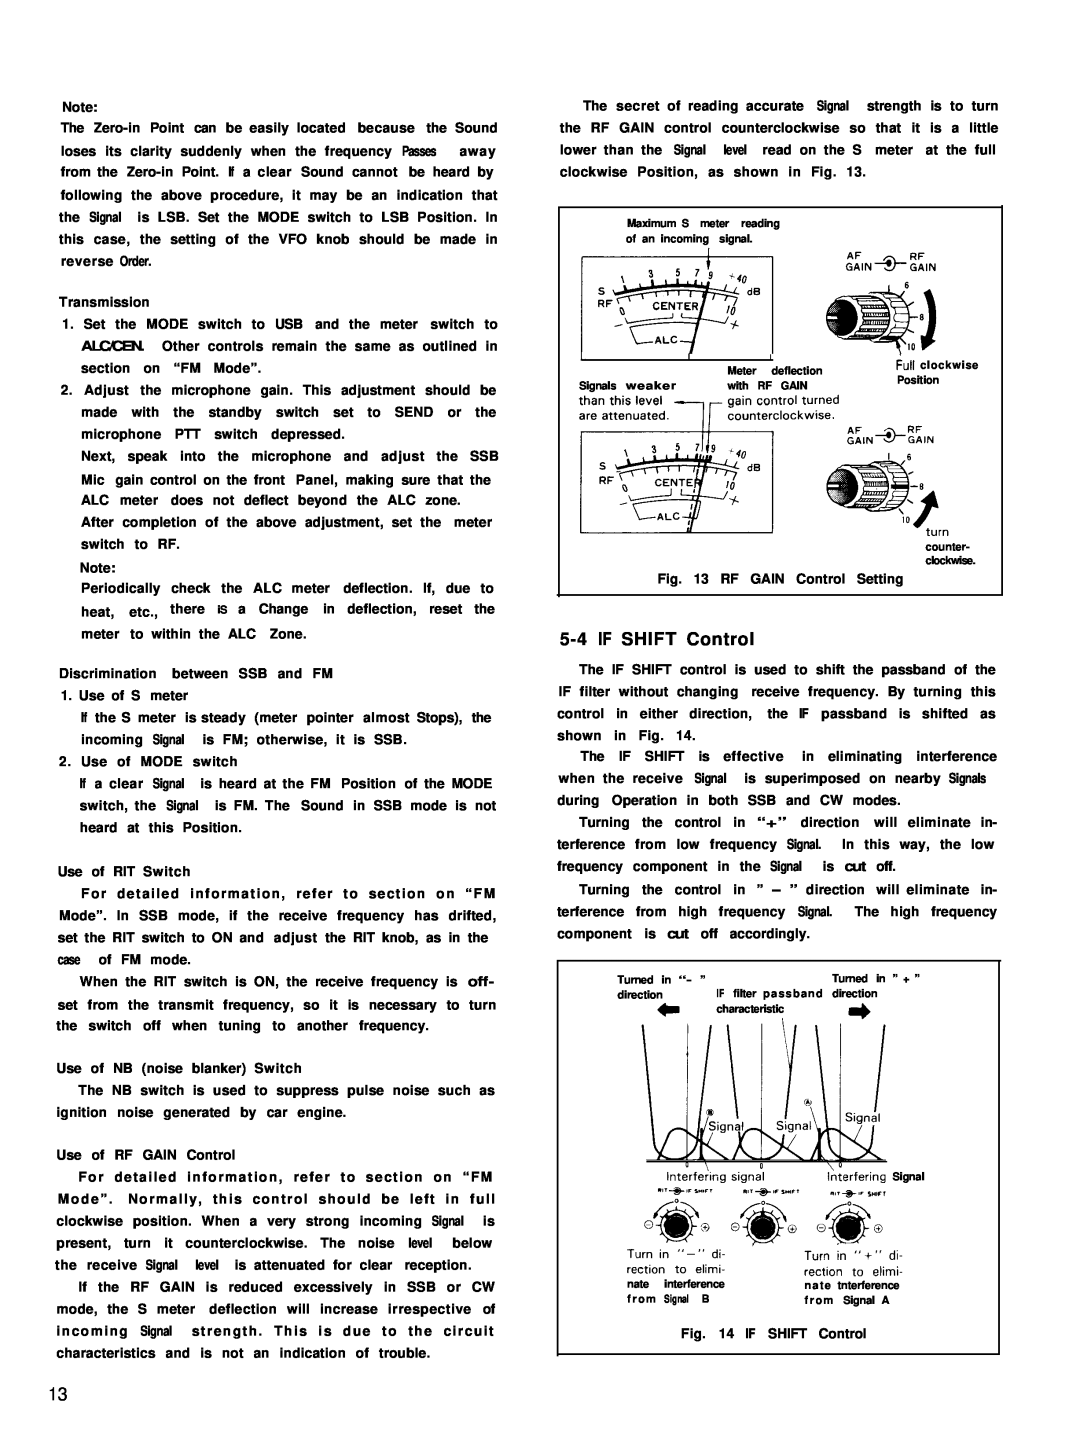 Kenwood TS-780 manual 5-4IF SHIFT Control, “n ;,+;;,v 